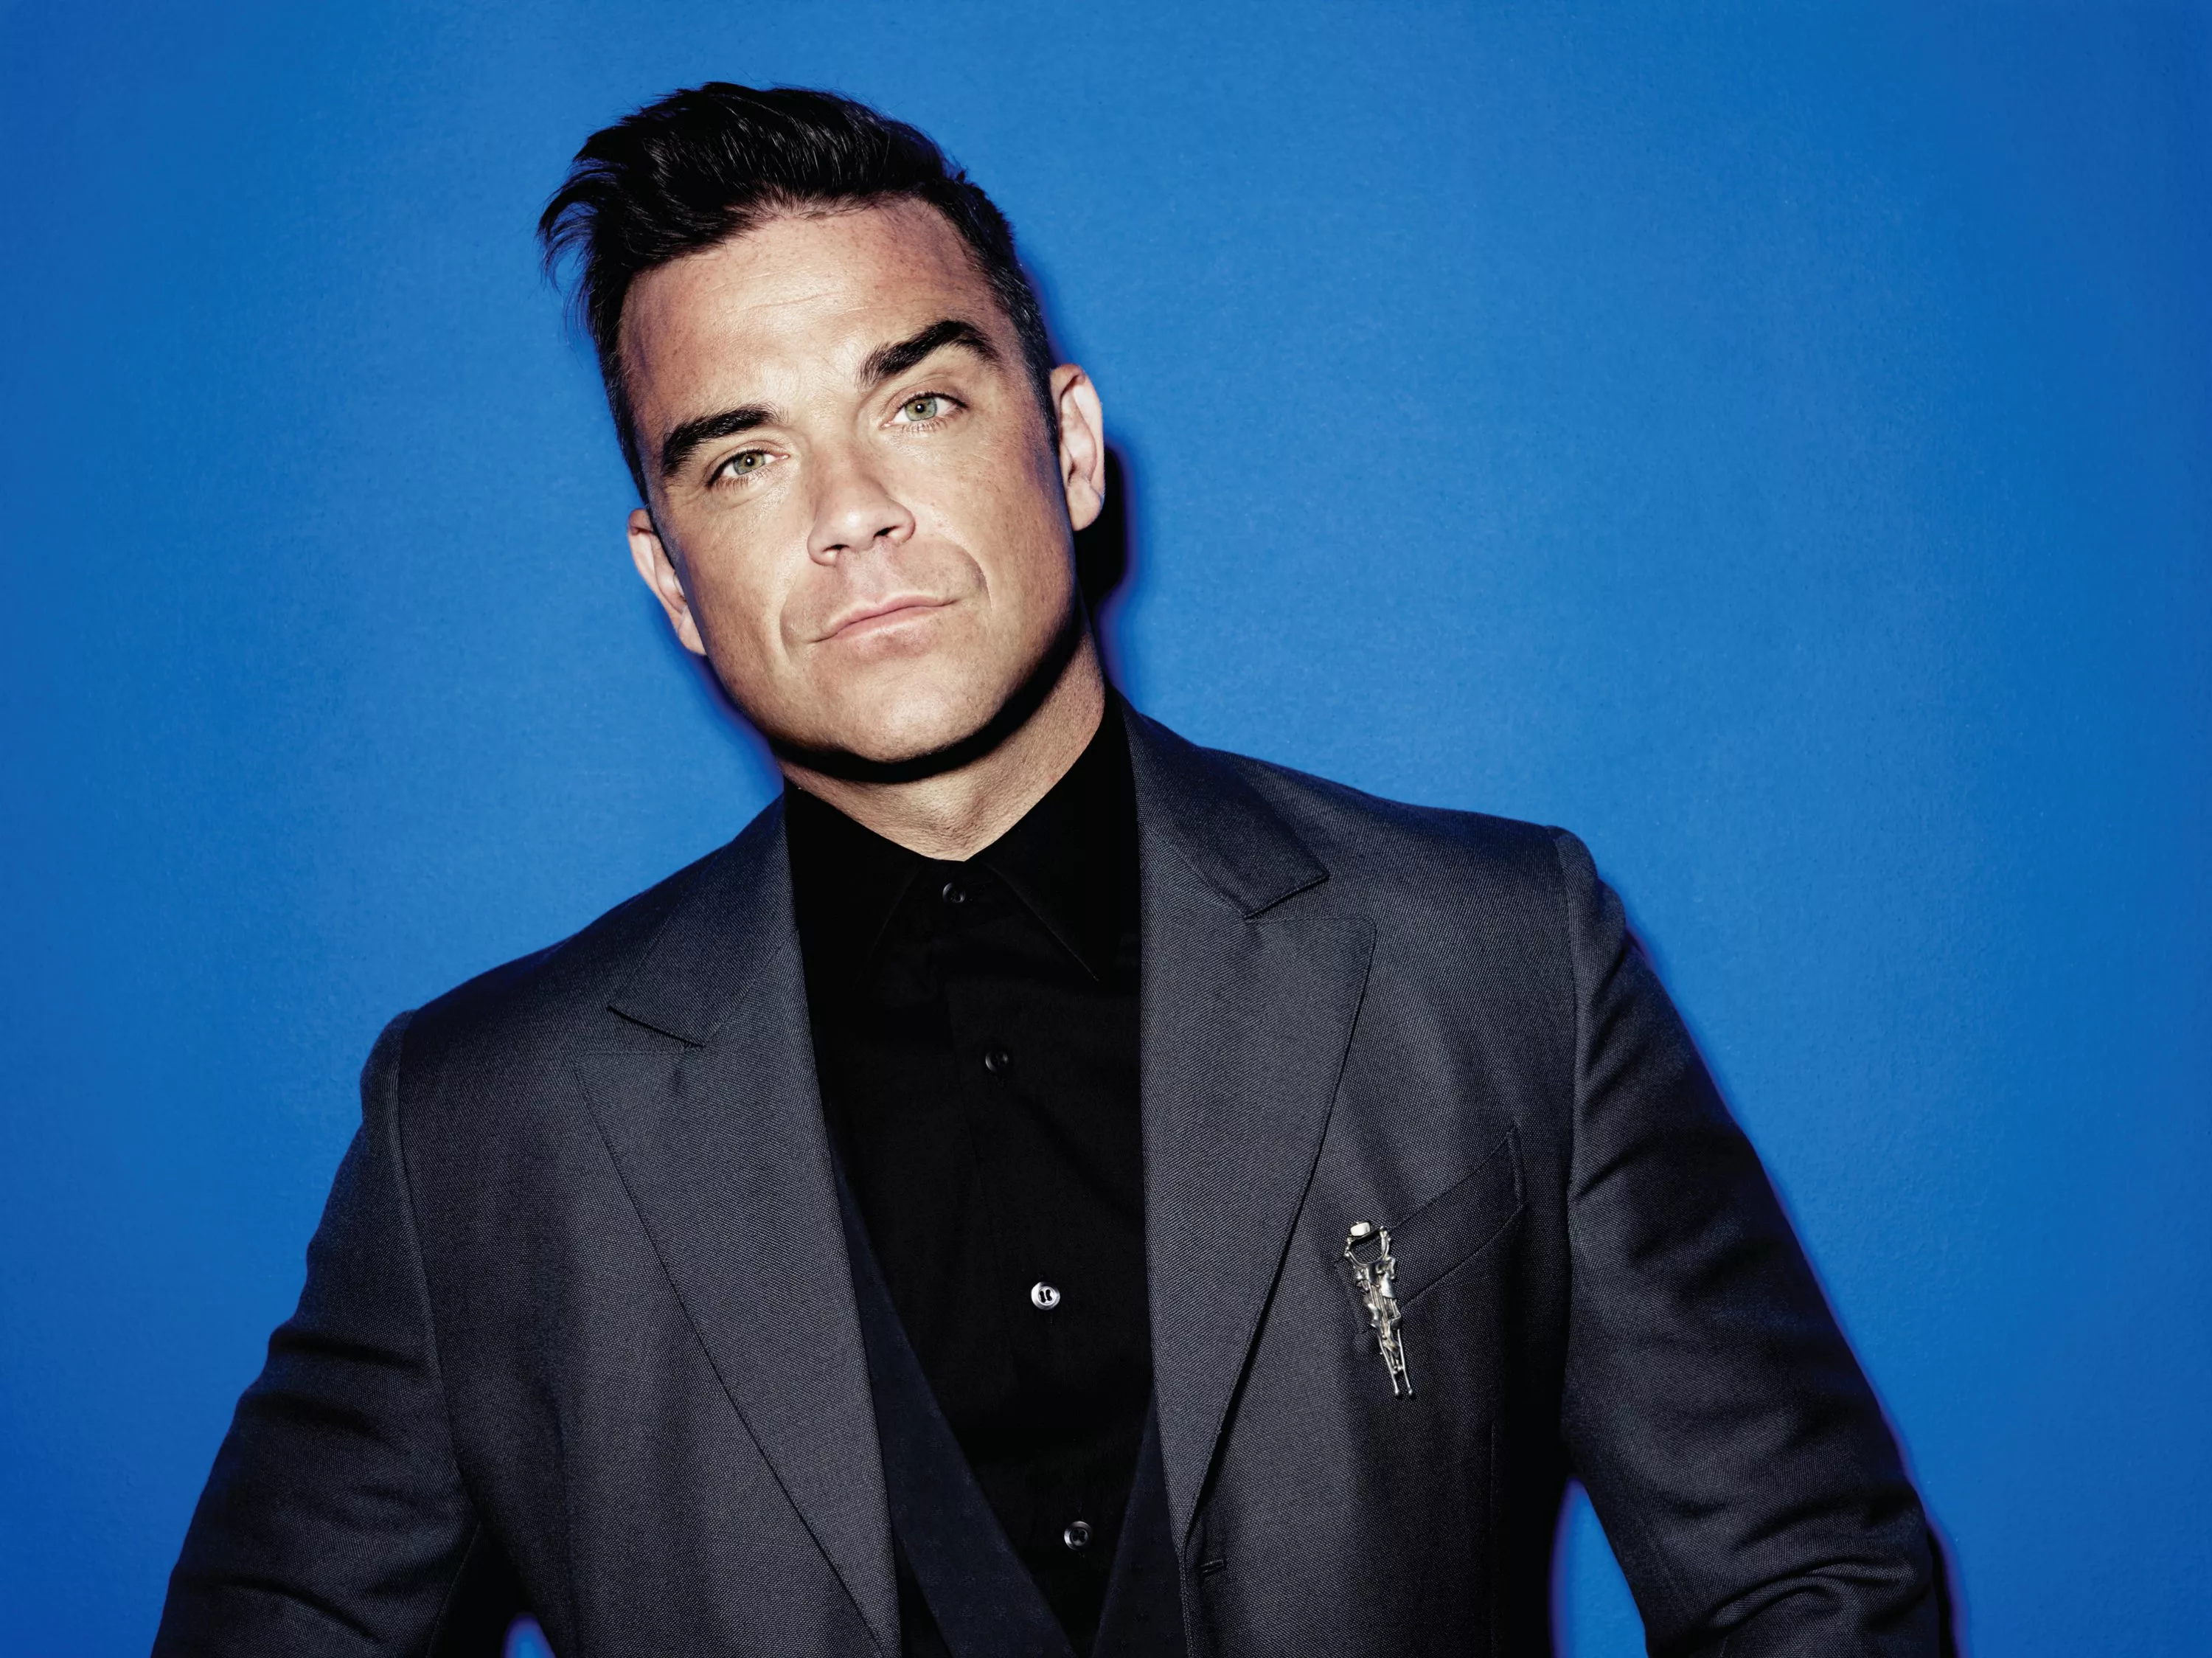 Robbie Williams "swinger" begge veier